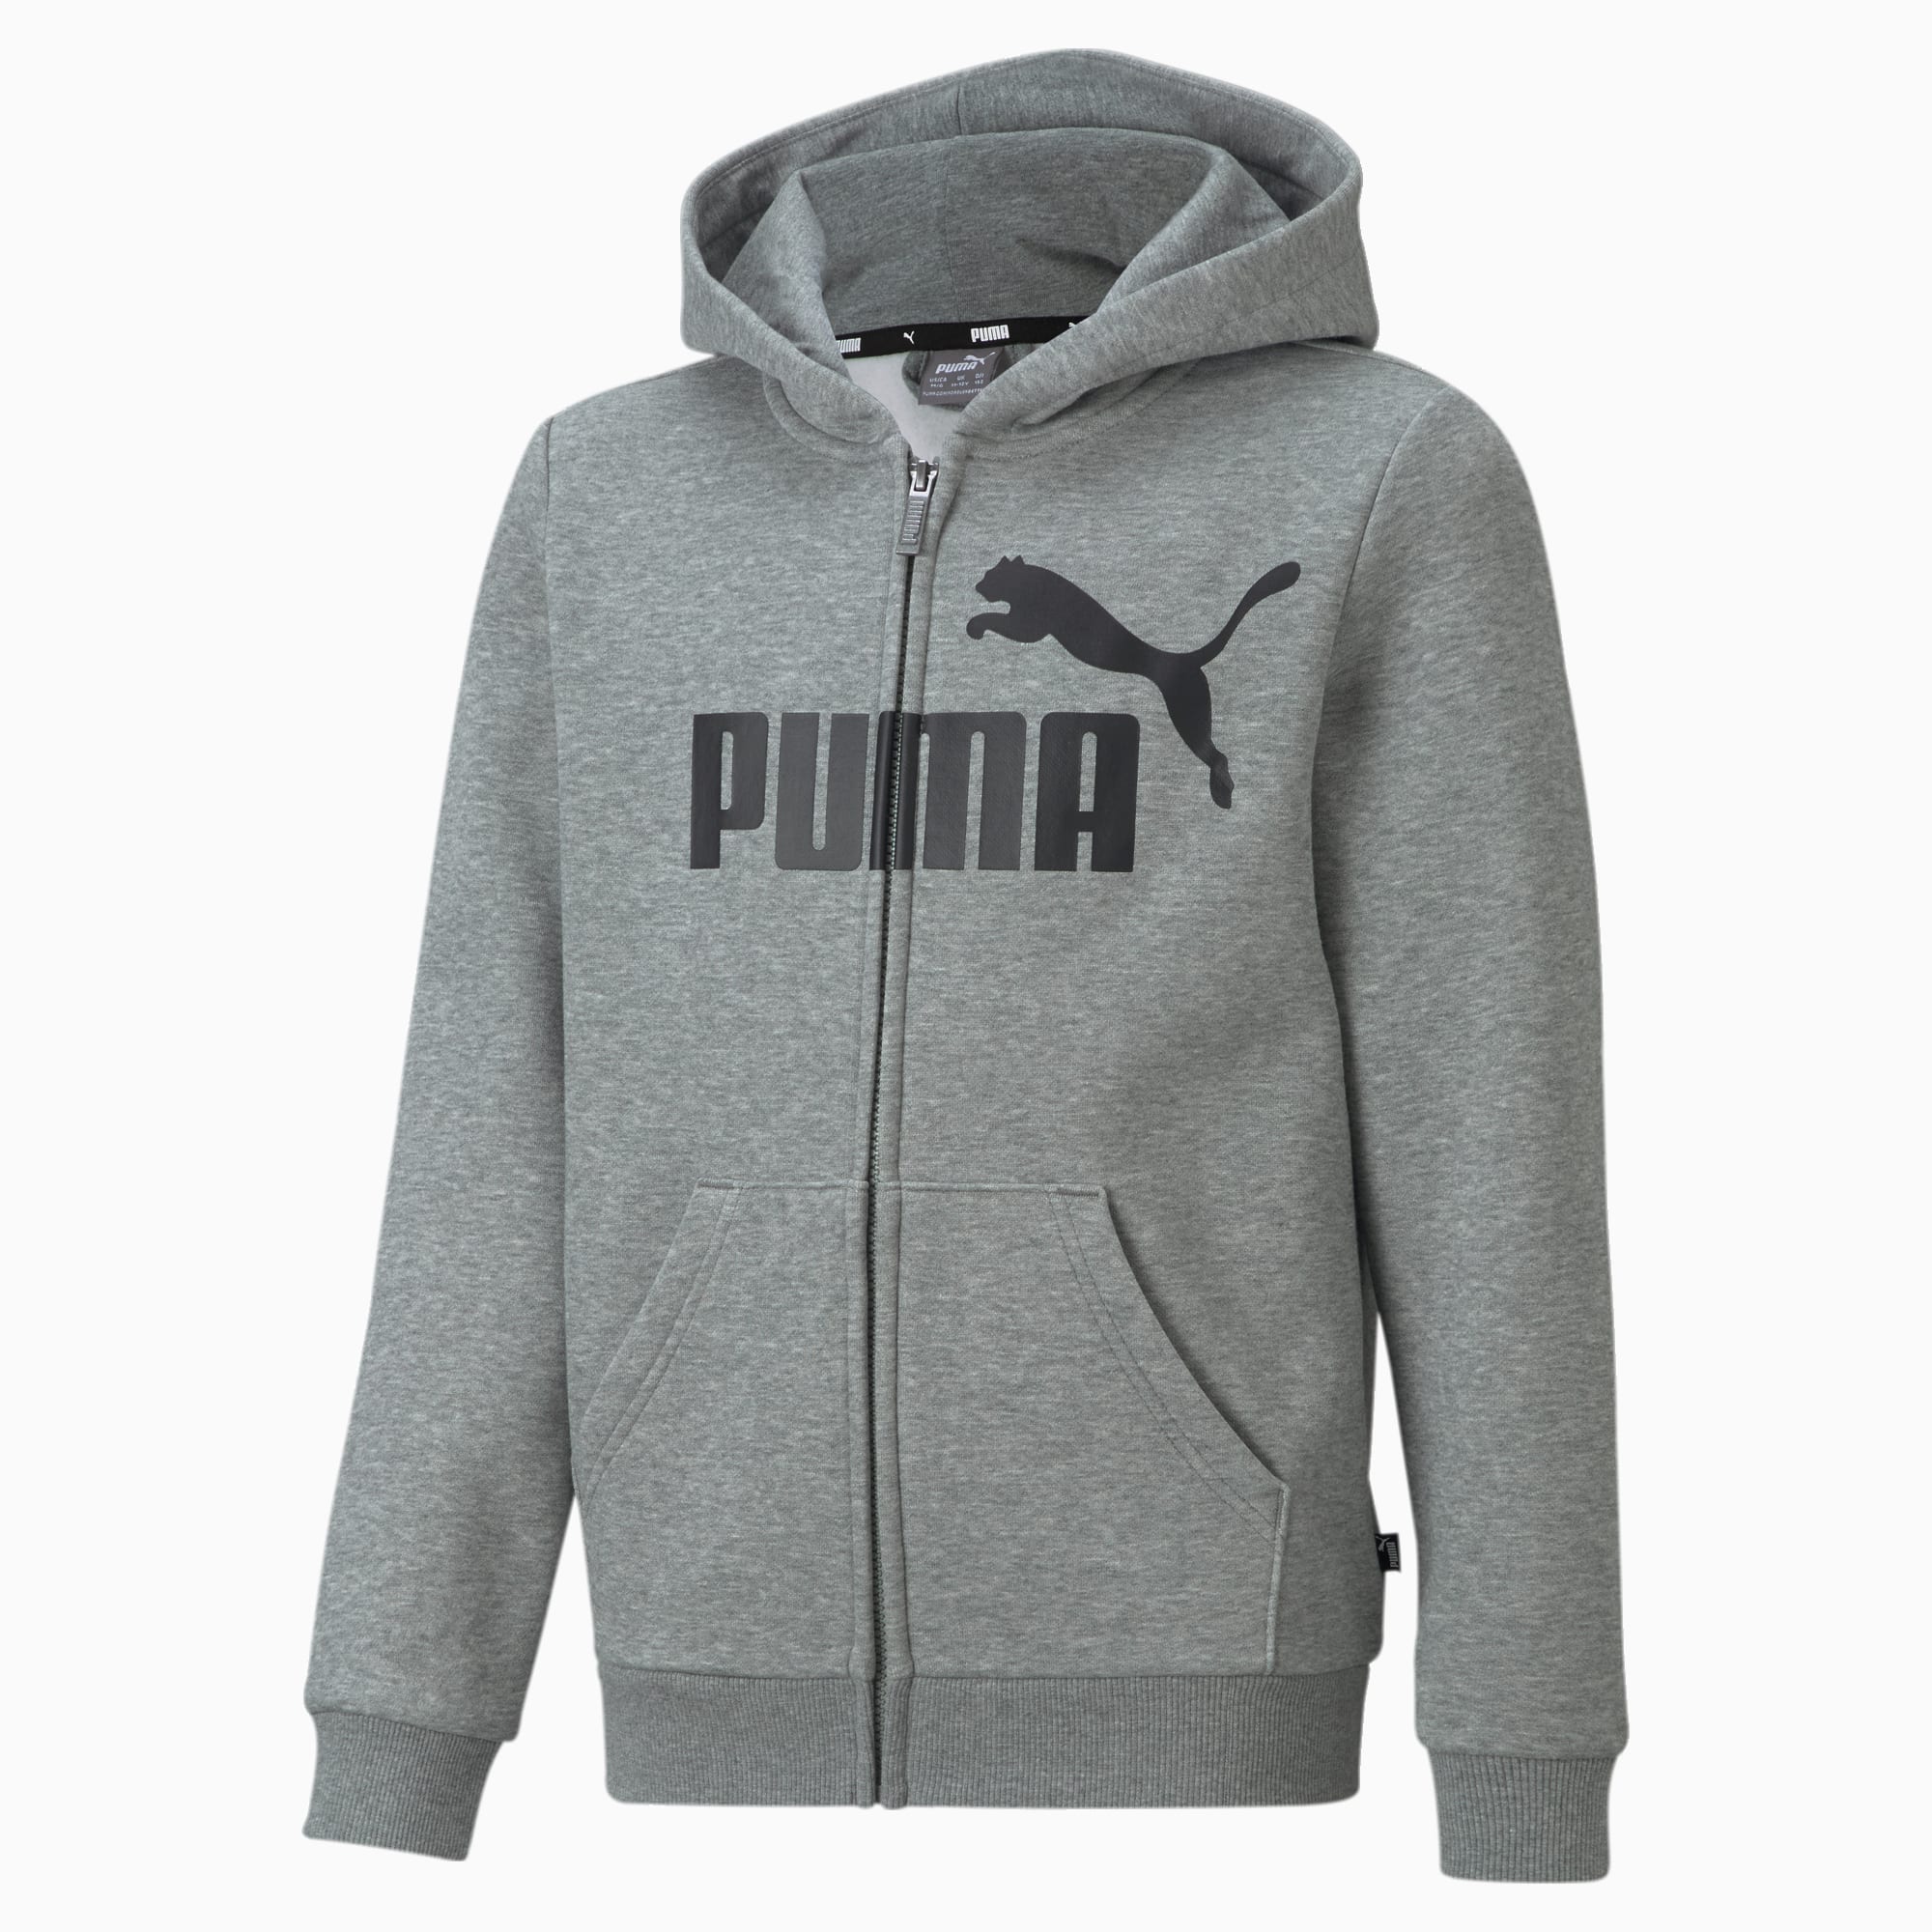 PUMA Essentials Big Logo Jugend Hoodie Mit Durchgehendem Reißverschluss Für Kinder, Mit Heide, Grau, Größe: 164, Kleidung